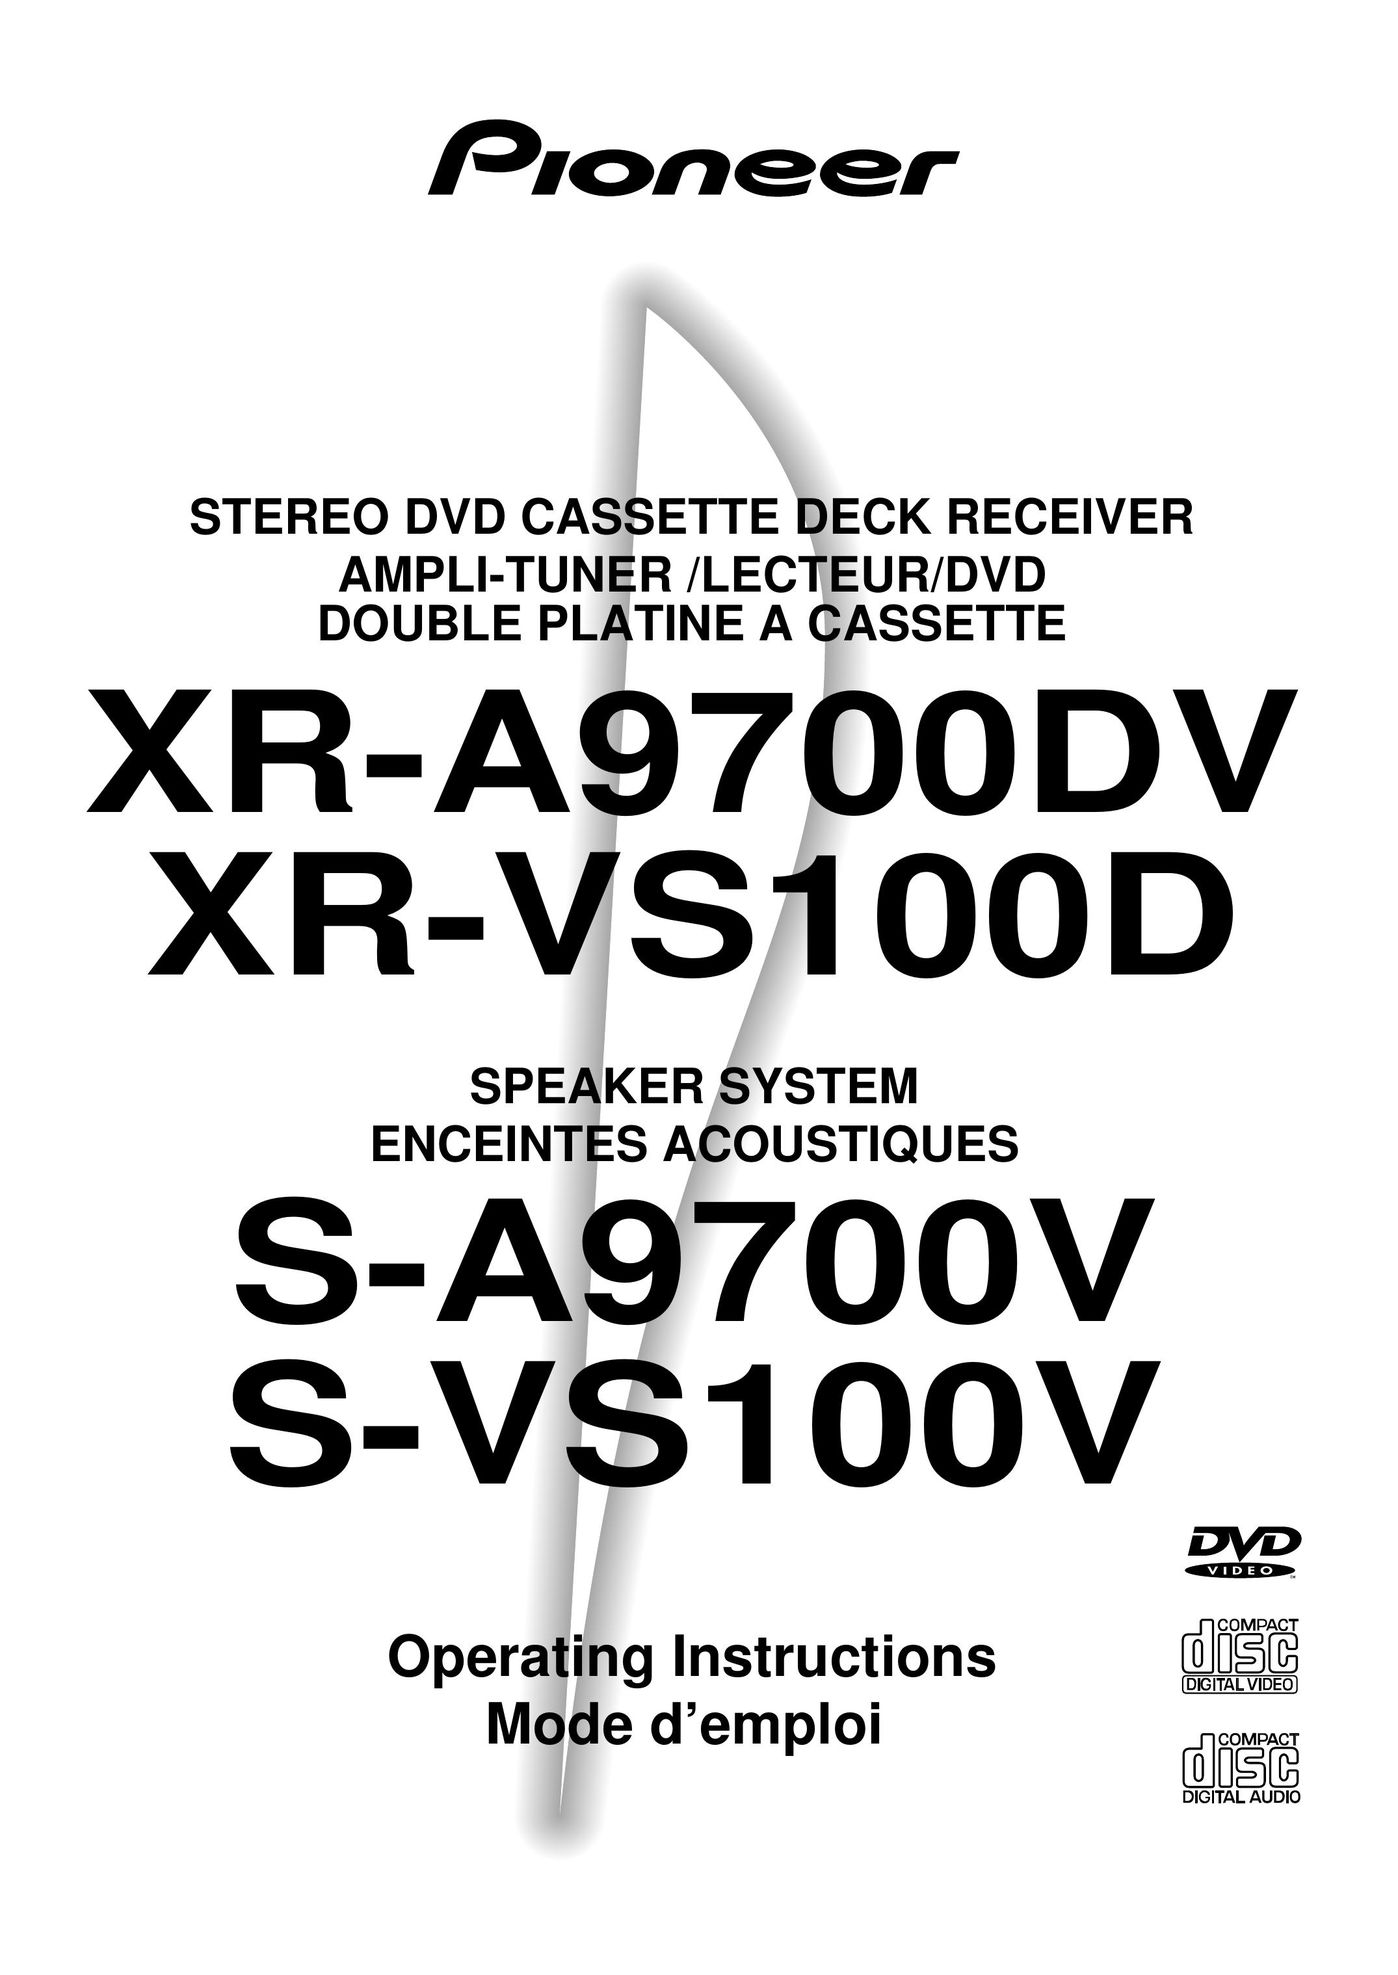 Pioneer S-VS100V Stereo Amplifier User Manual